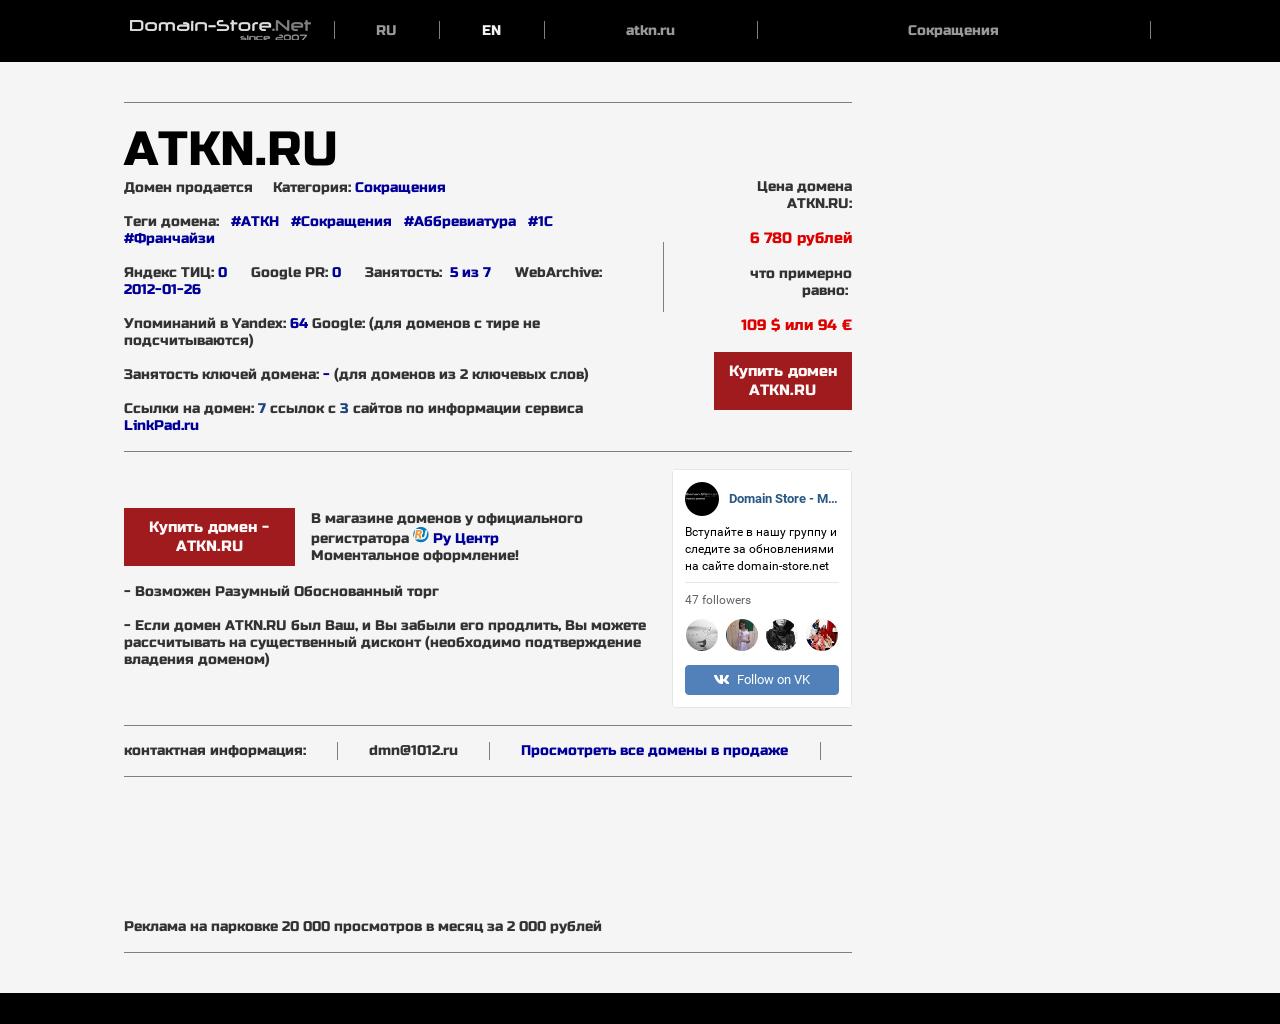 Изображение сайта atkn.ru в разрешении 1280x1024